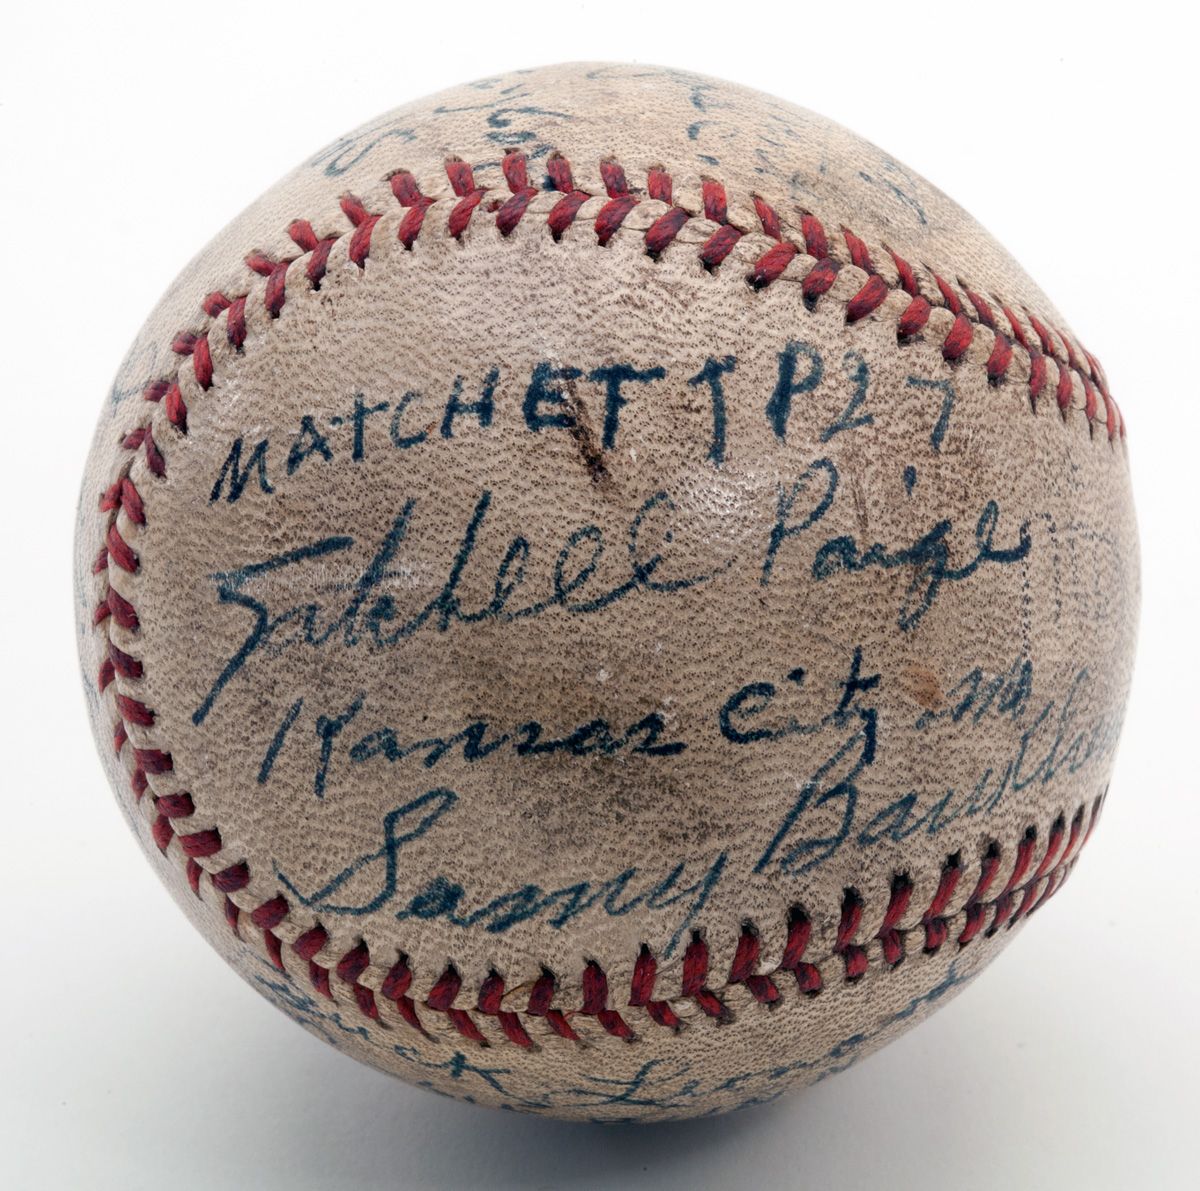 Negro League 1942 Kansas City Monarchs Satchel Paige Jersey